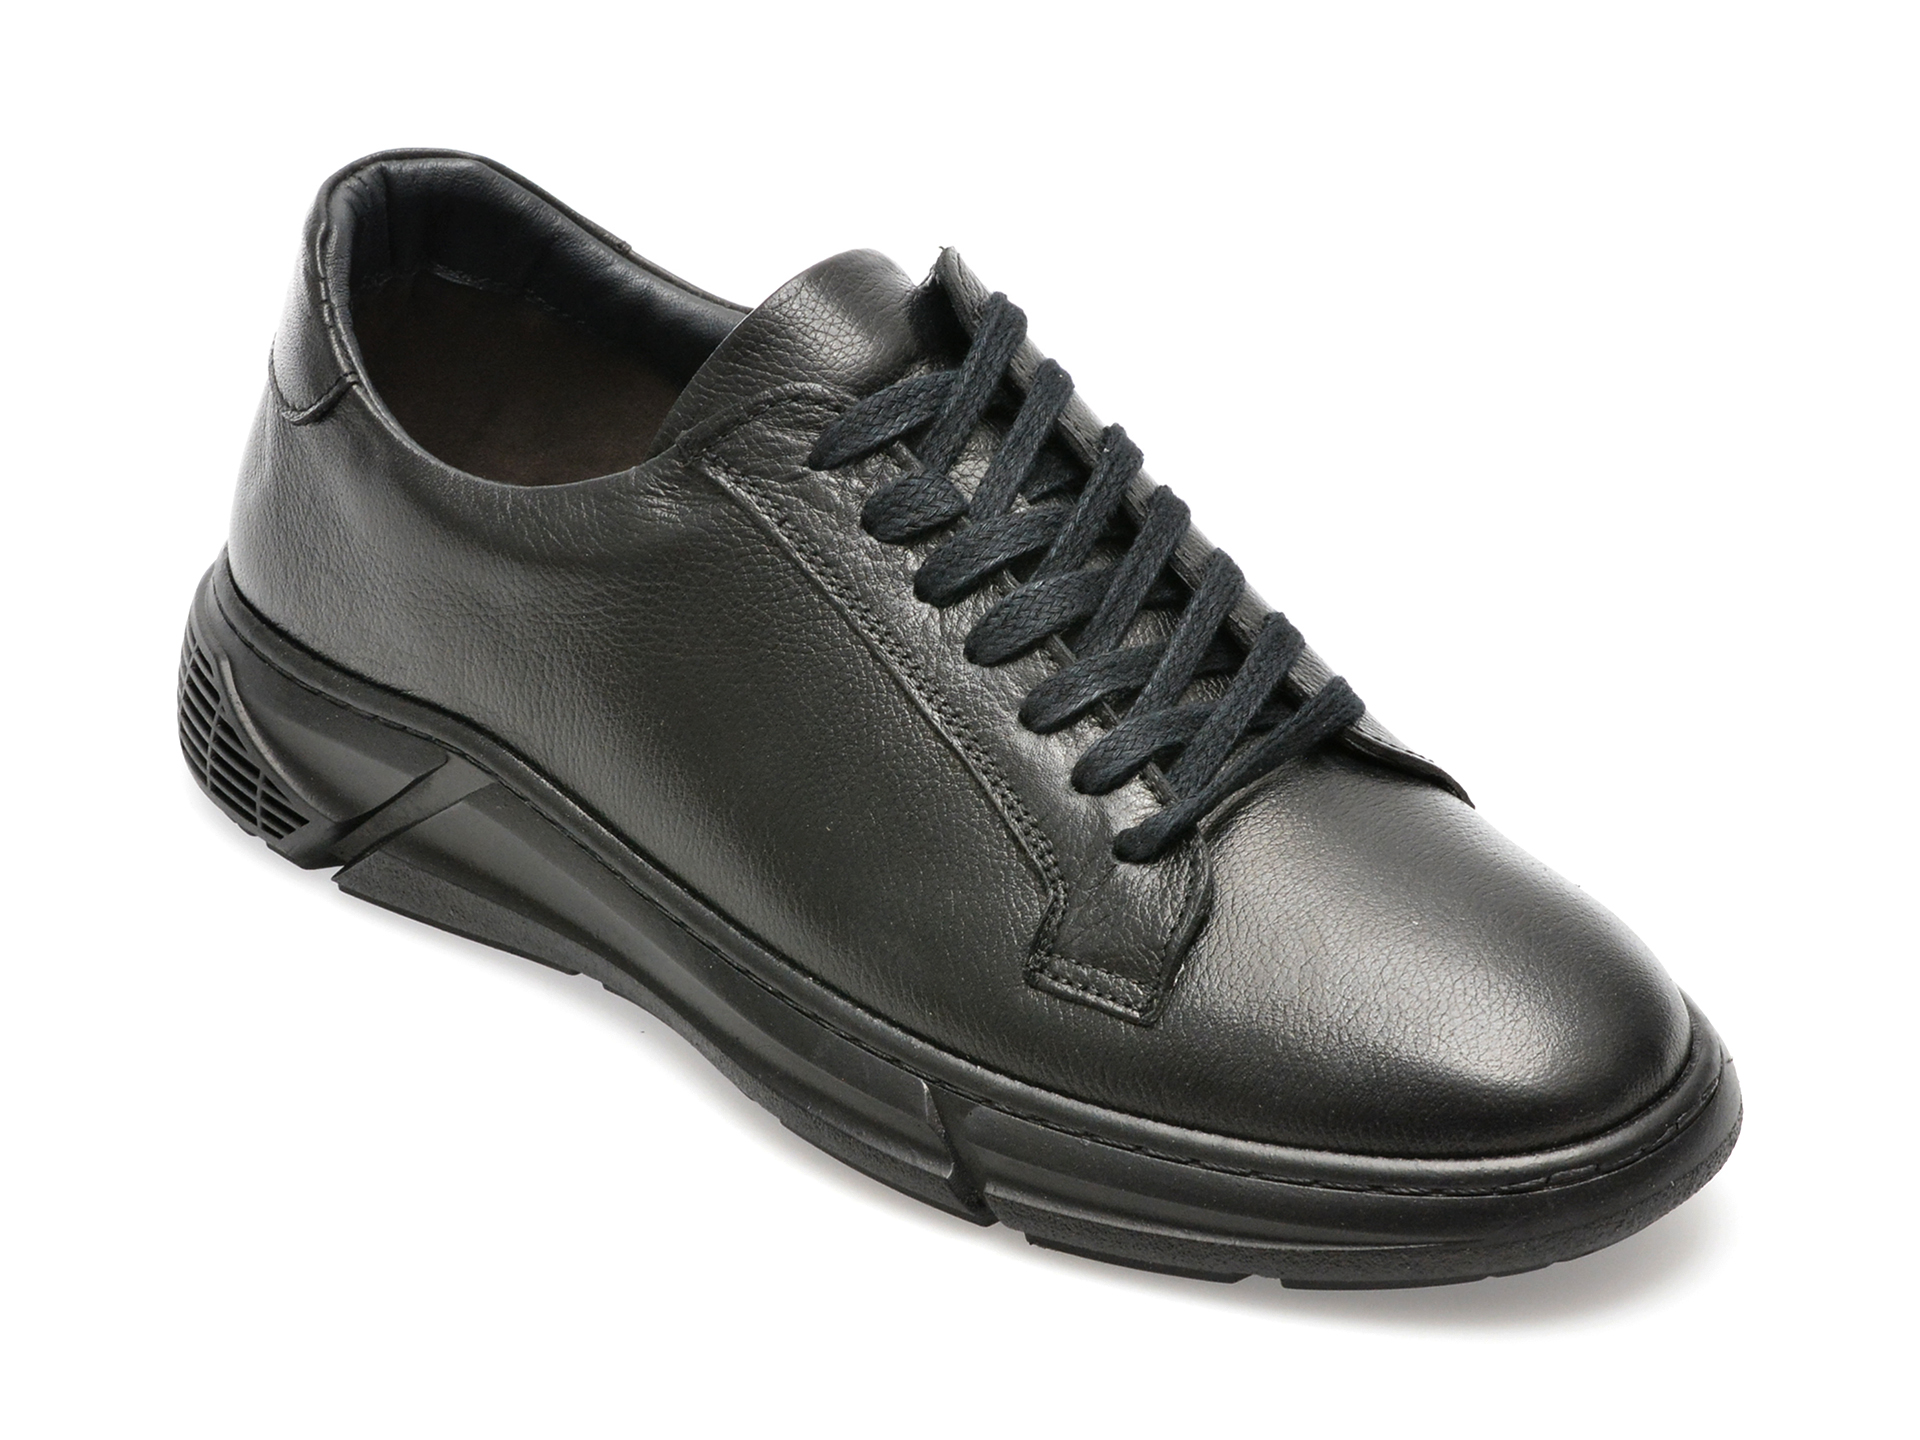 Pantofi AXXELLL negri, ER804, din piele naturala /barbati/pantofi